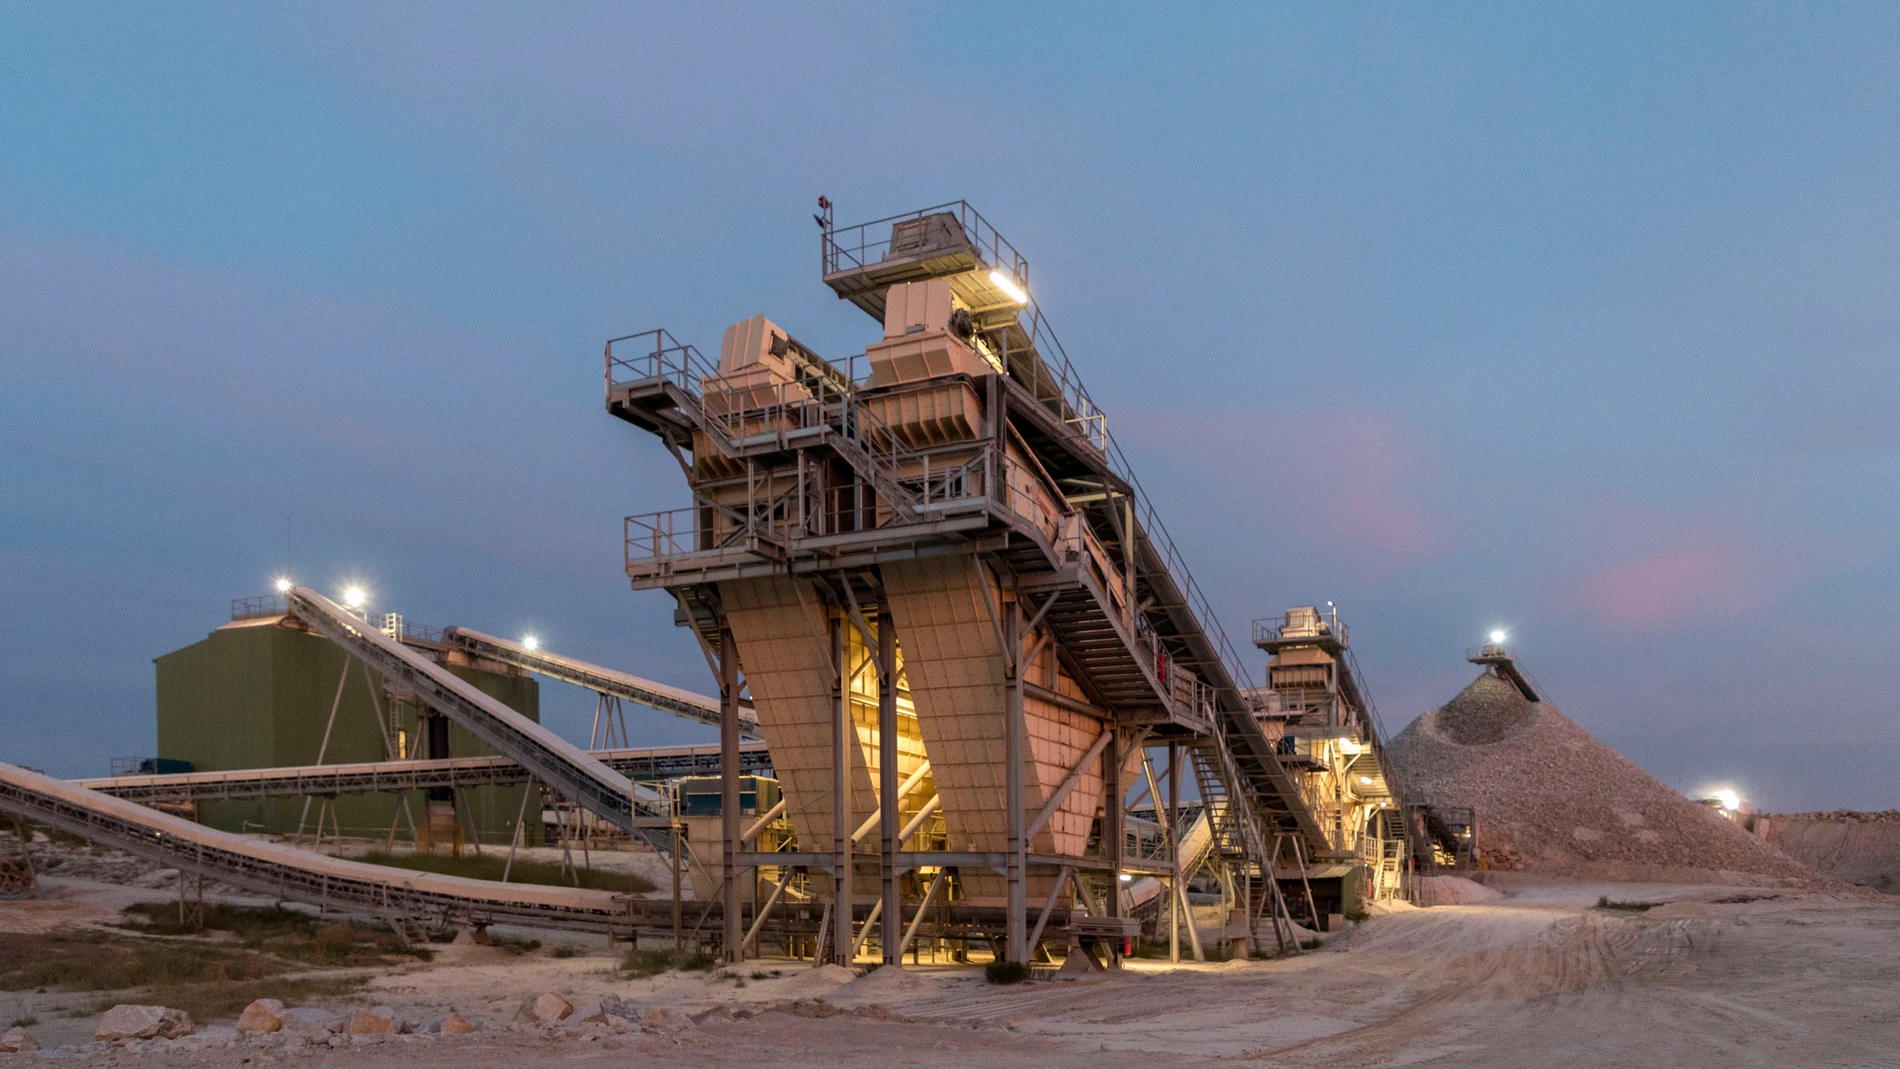 La importancia del wolframio ha devuelto la explotación minera a Barruecopardo después de 40 años, generando 180 puestos de trabajo en esta pequeña localidad del oeste salmantino